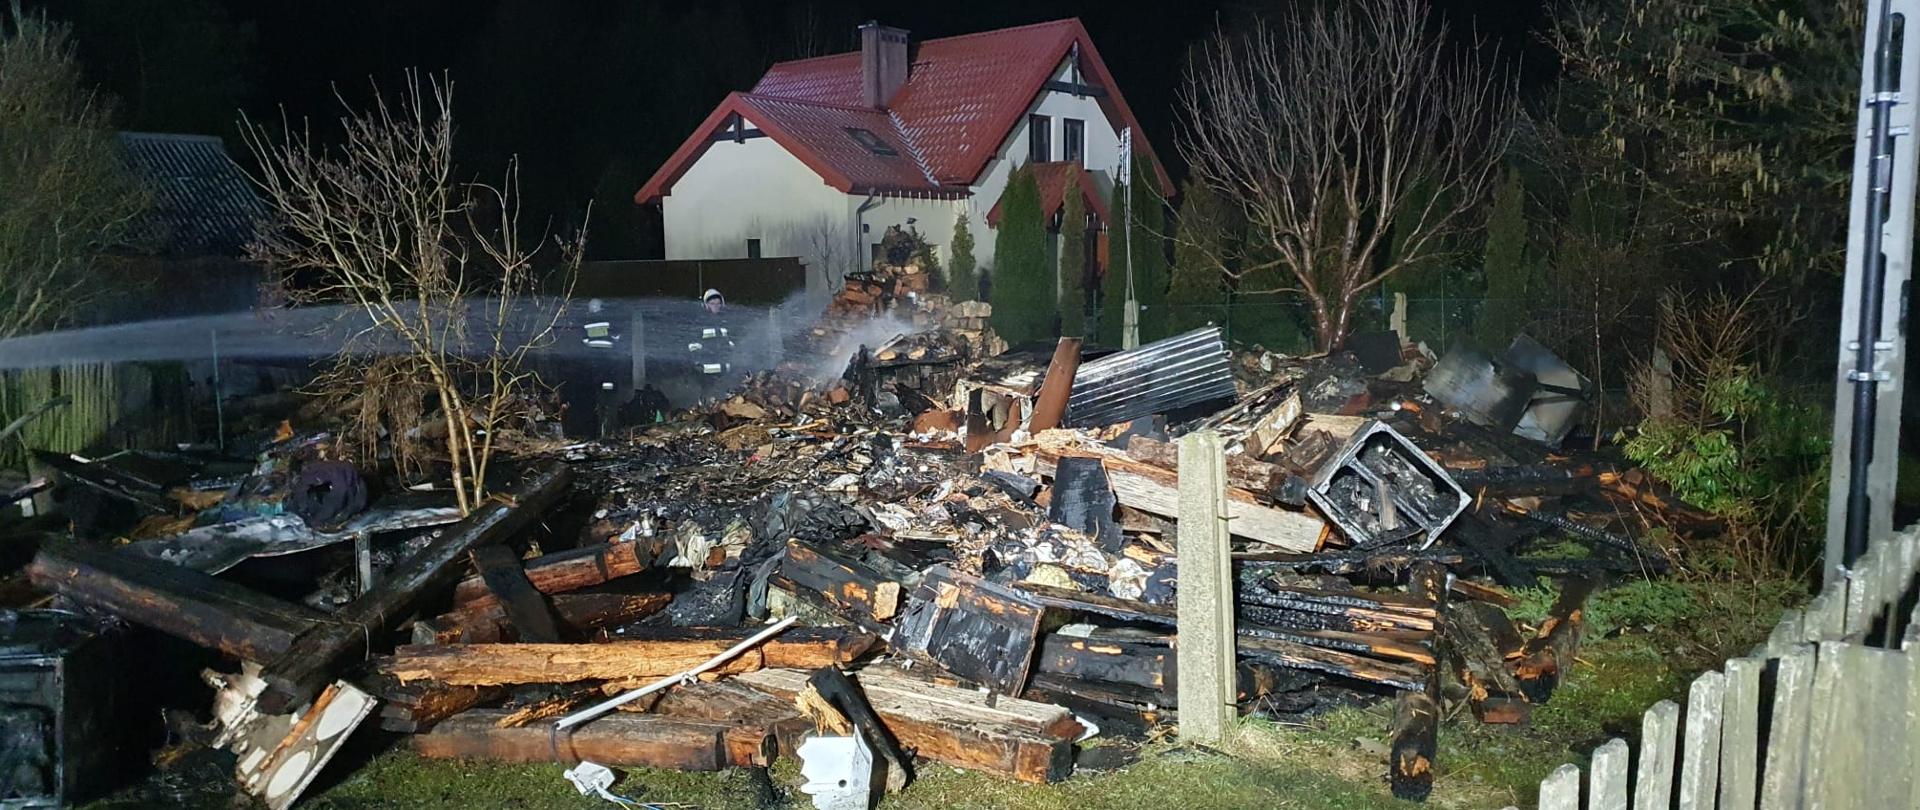 Zdjęcie przedstawia pogorzelisko pozostałe po pożarze budynku mieszkalnego. Z lewej strony widać strumień wody podawany w celu dogaszenia, a w tle sąsiadujący ze spalonym obiektem dom.